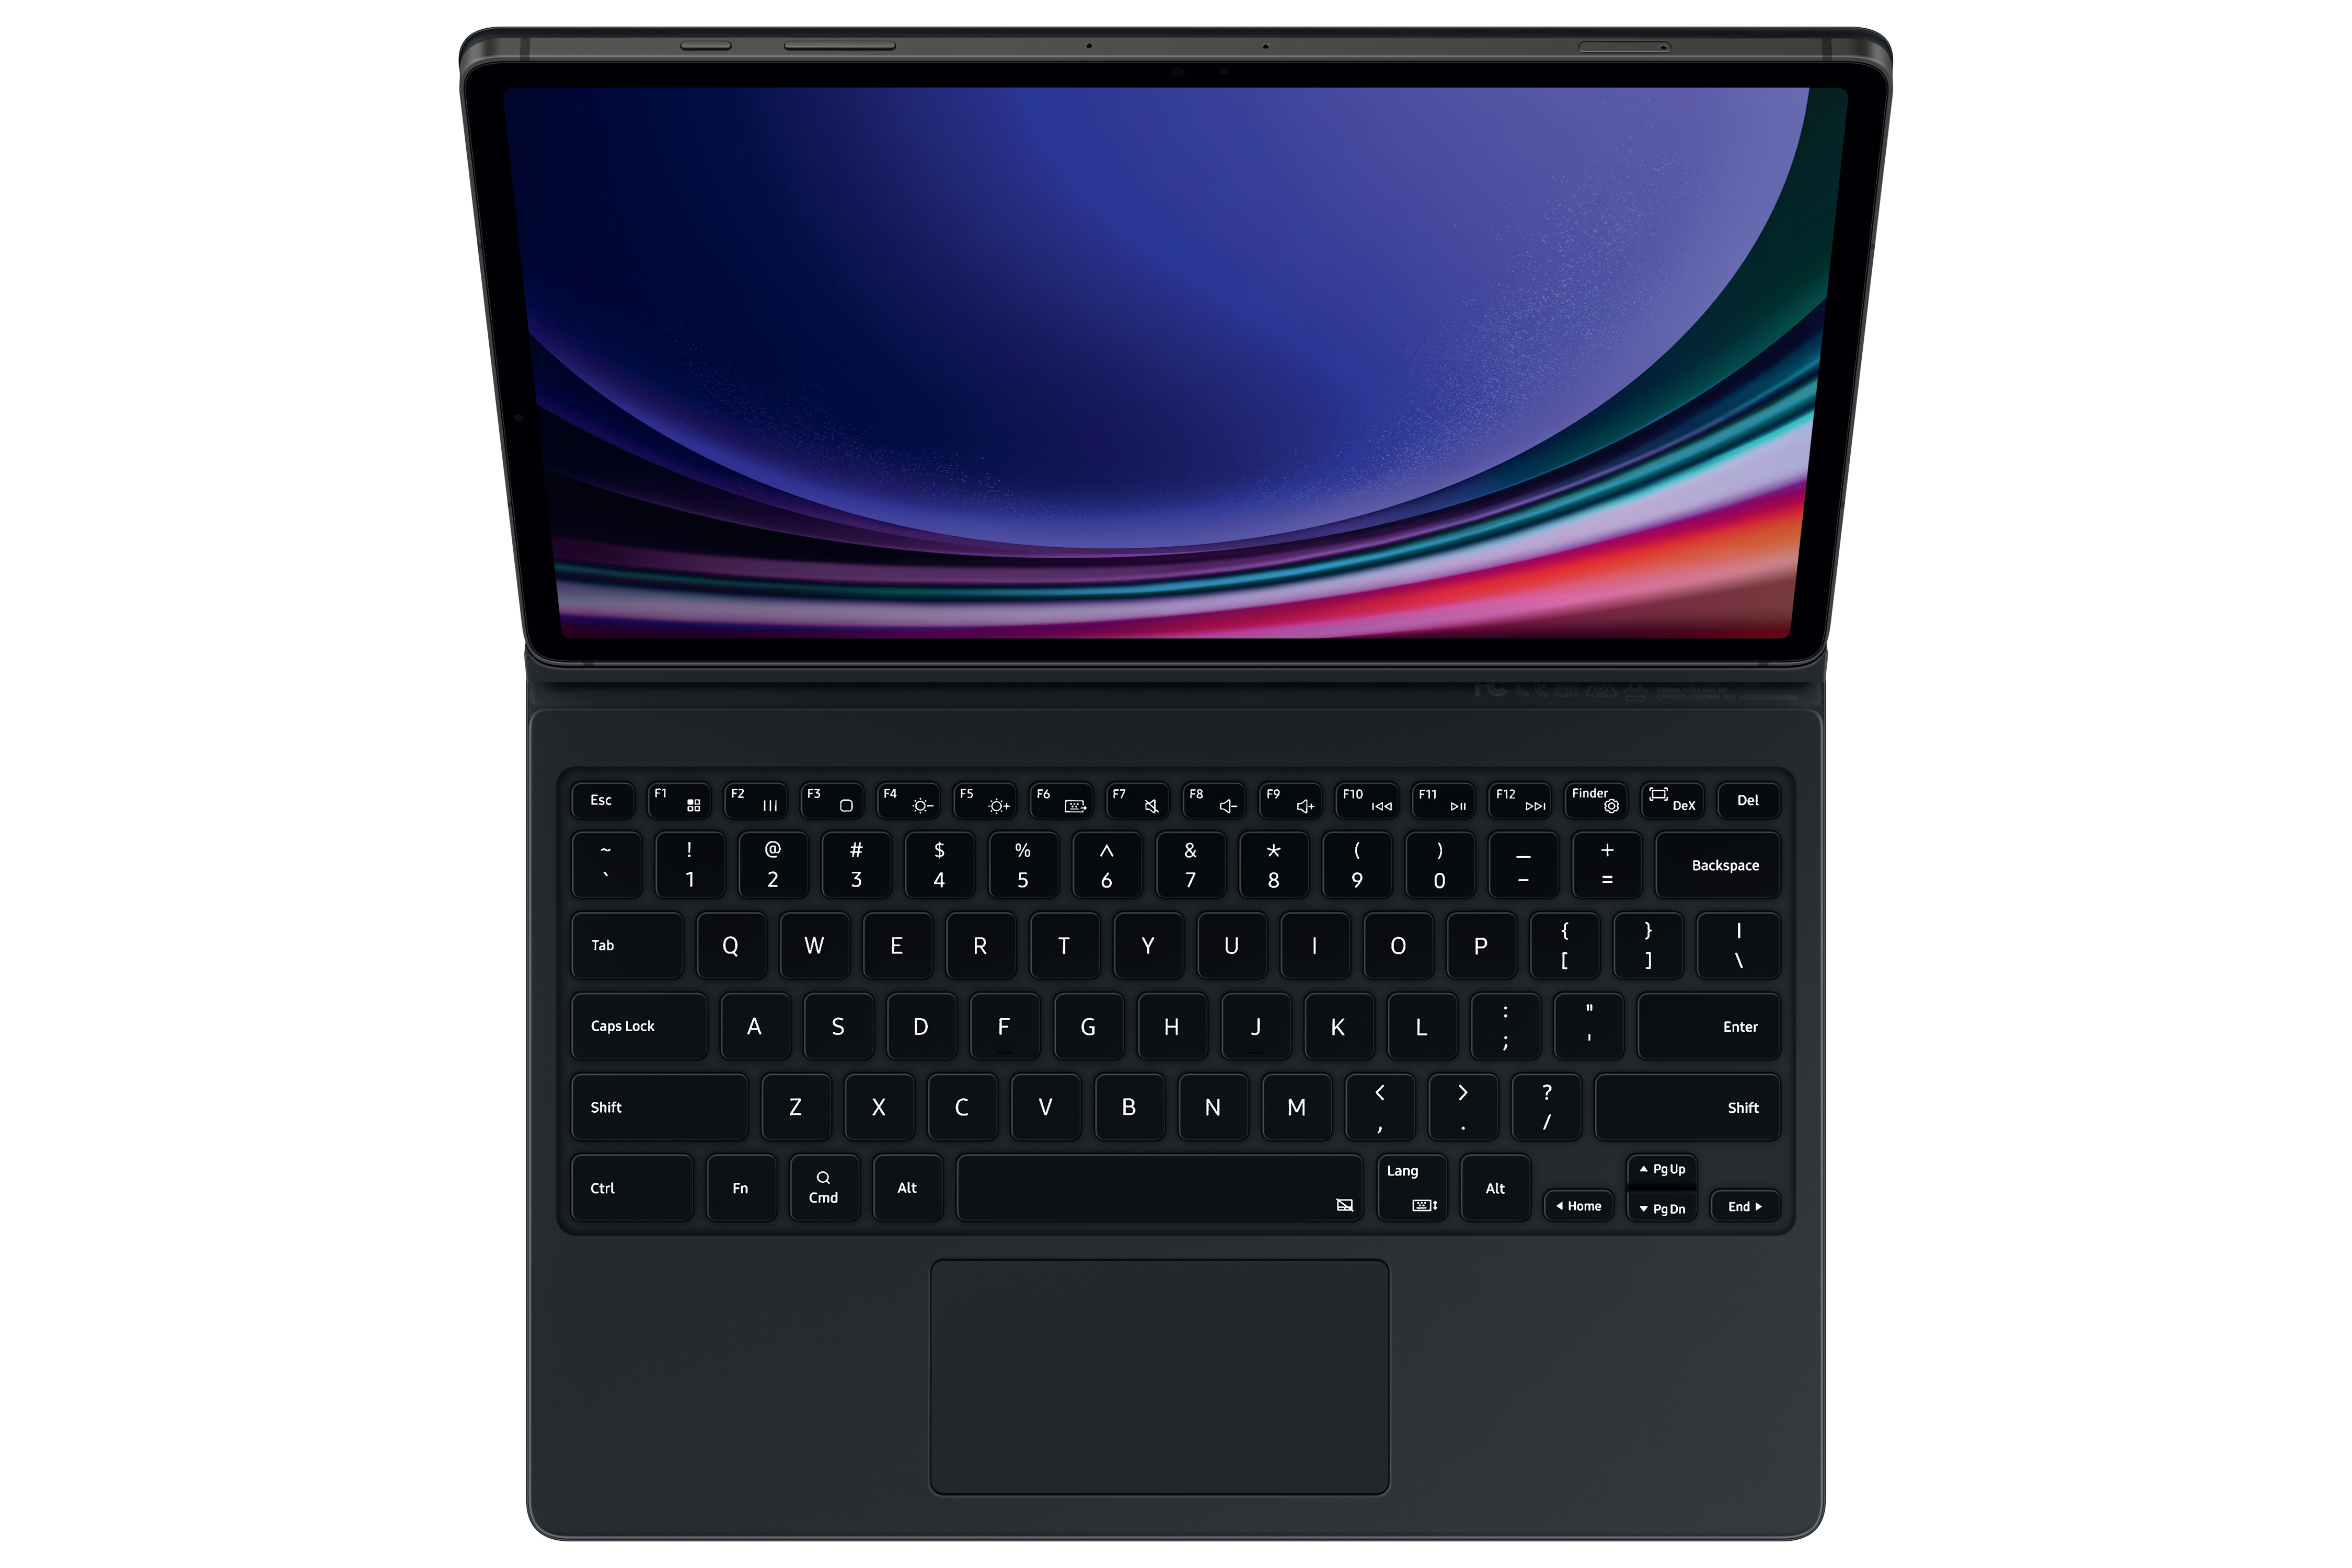 SAMSUNG EF-DX815 Keyboard, S9+, Black FE+, Bookcover, Samsung, GalaxyTab GalaxyTab S9